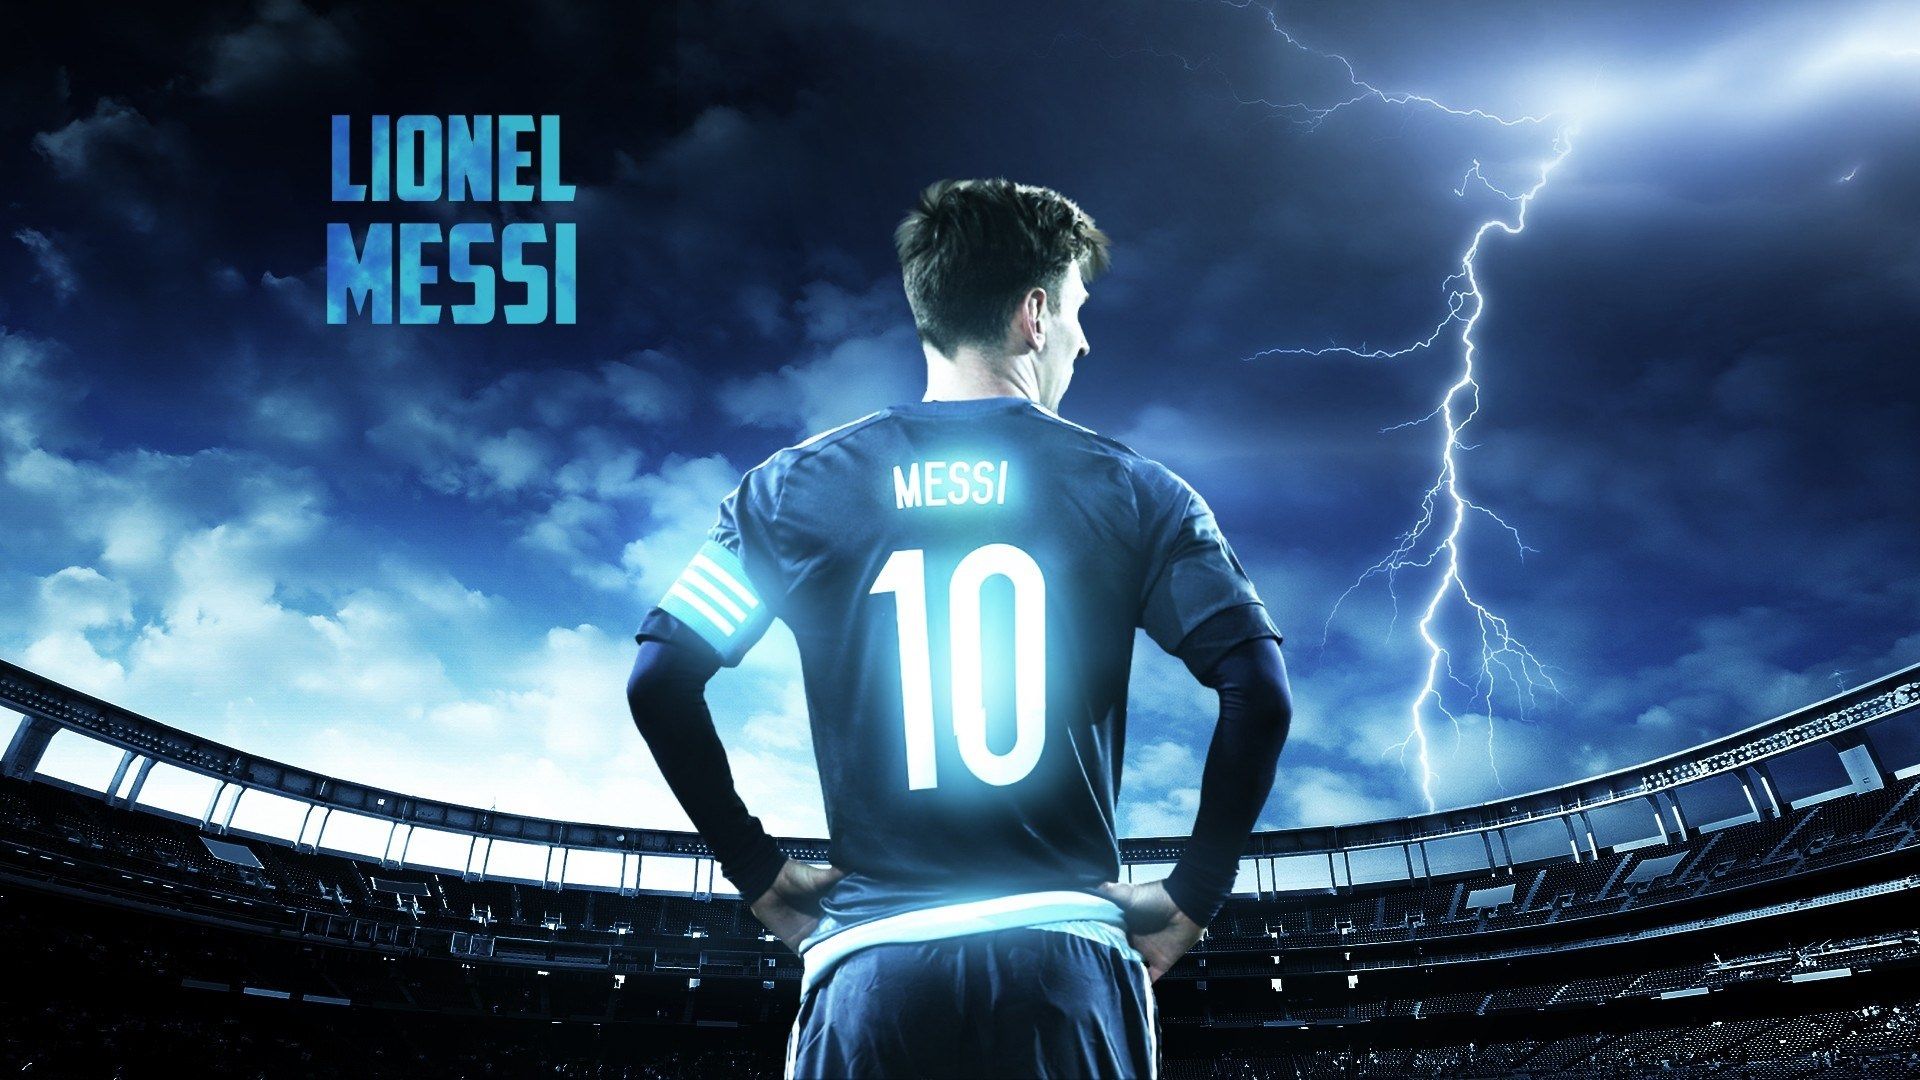 Hãy tải về hình nền Messi để che đi bức tường trống trải trong nhà bạn! Với tài năng và khả năng chơi bóng đỉnh cao, bạn sẽ thấy Messi sẽ mang lại niềm hứng khởi và động lực cho bạn.